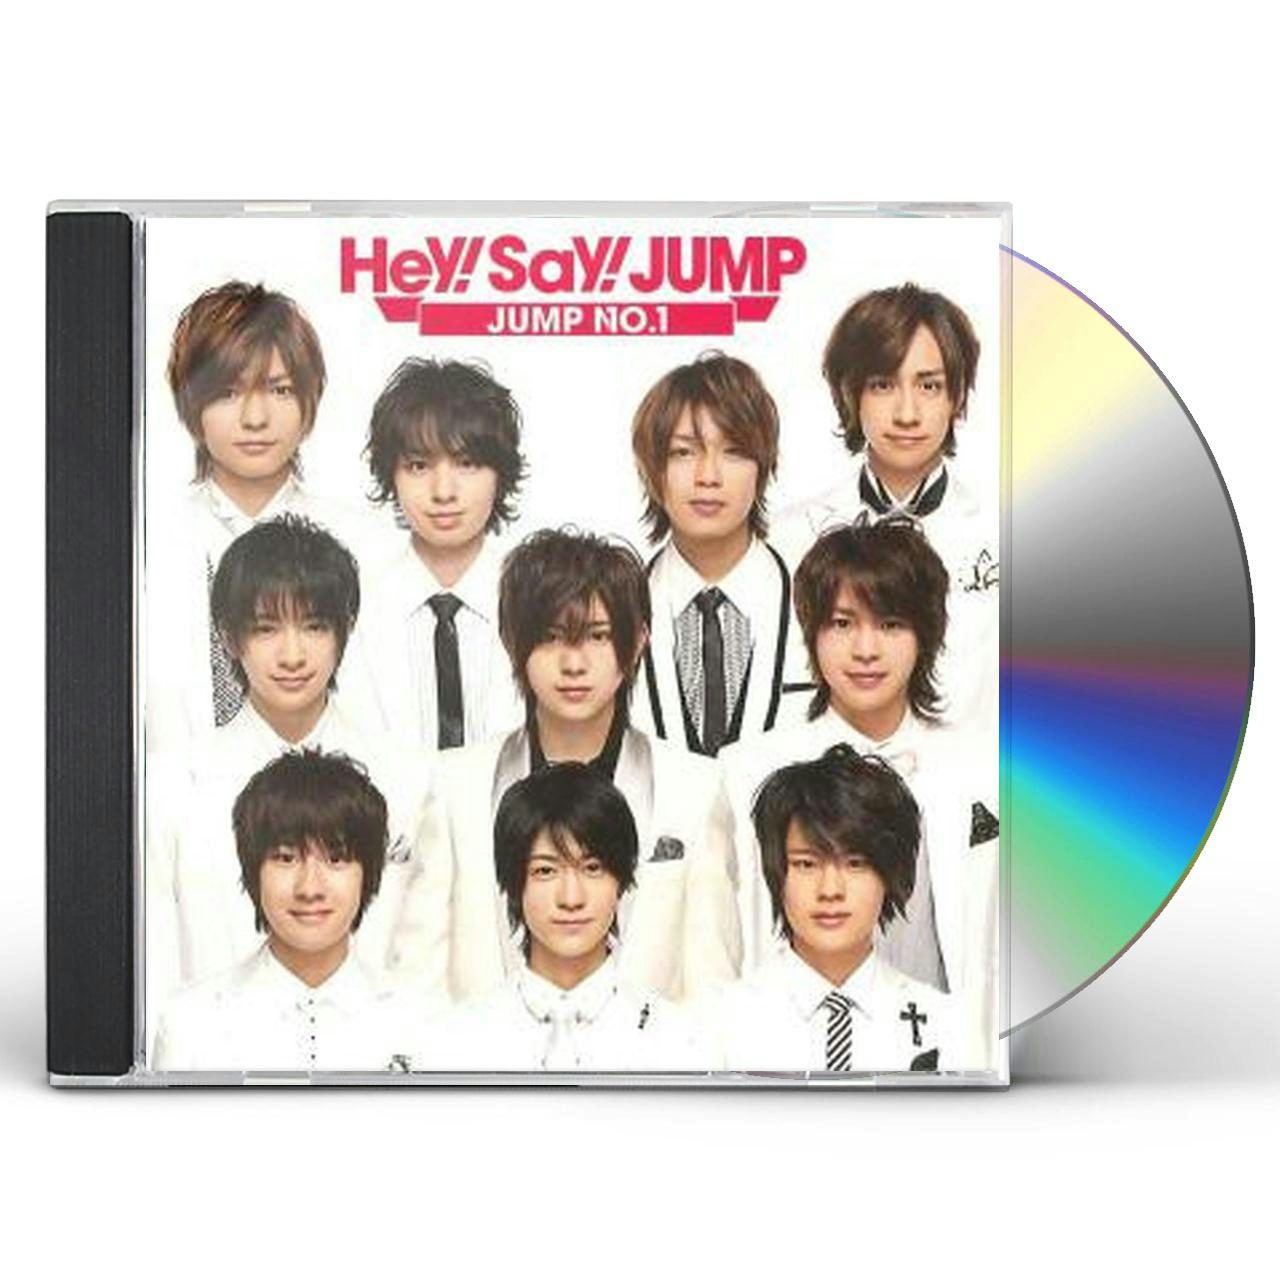 Hey!Say!JUMP CD - 邦楽